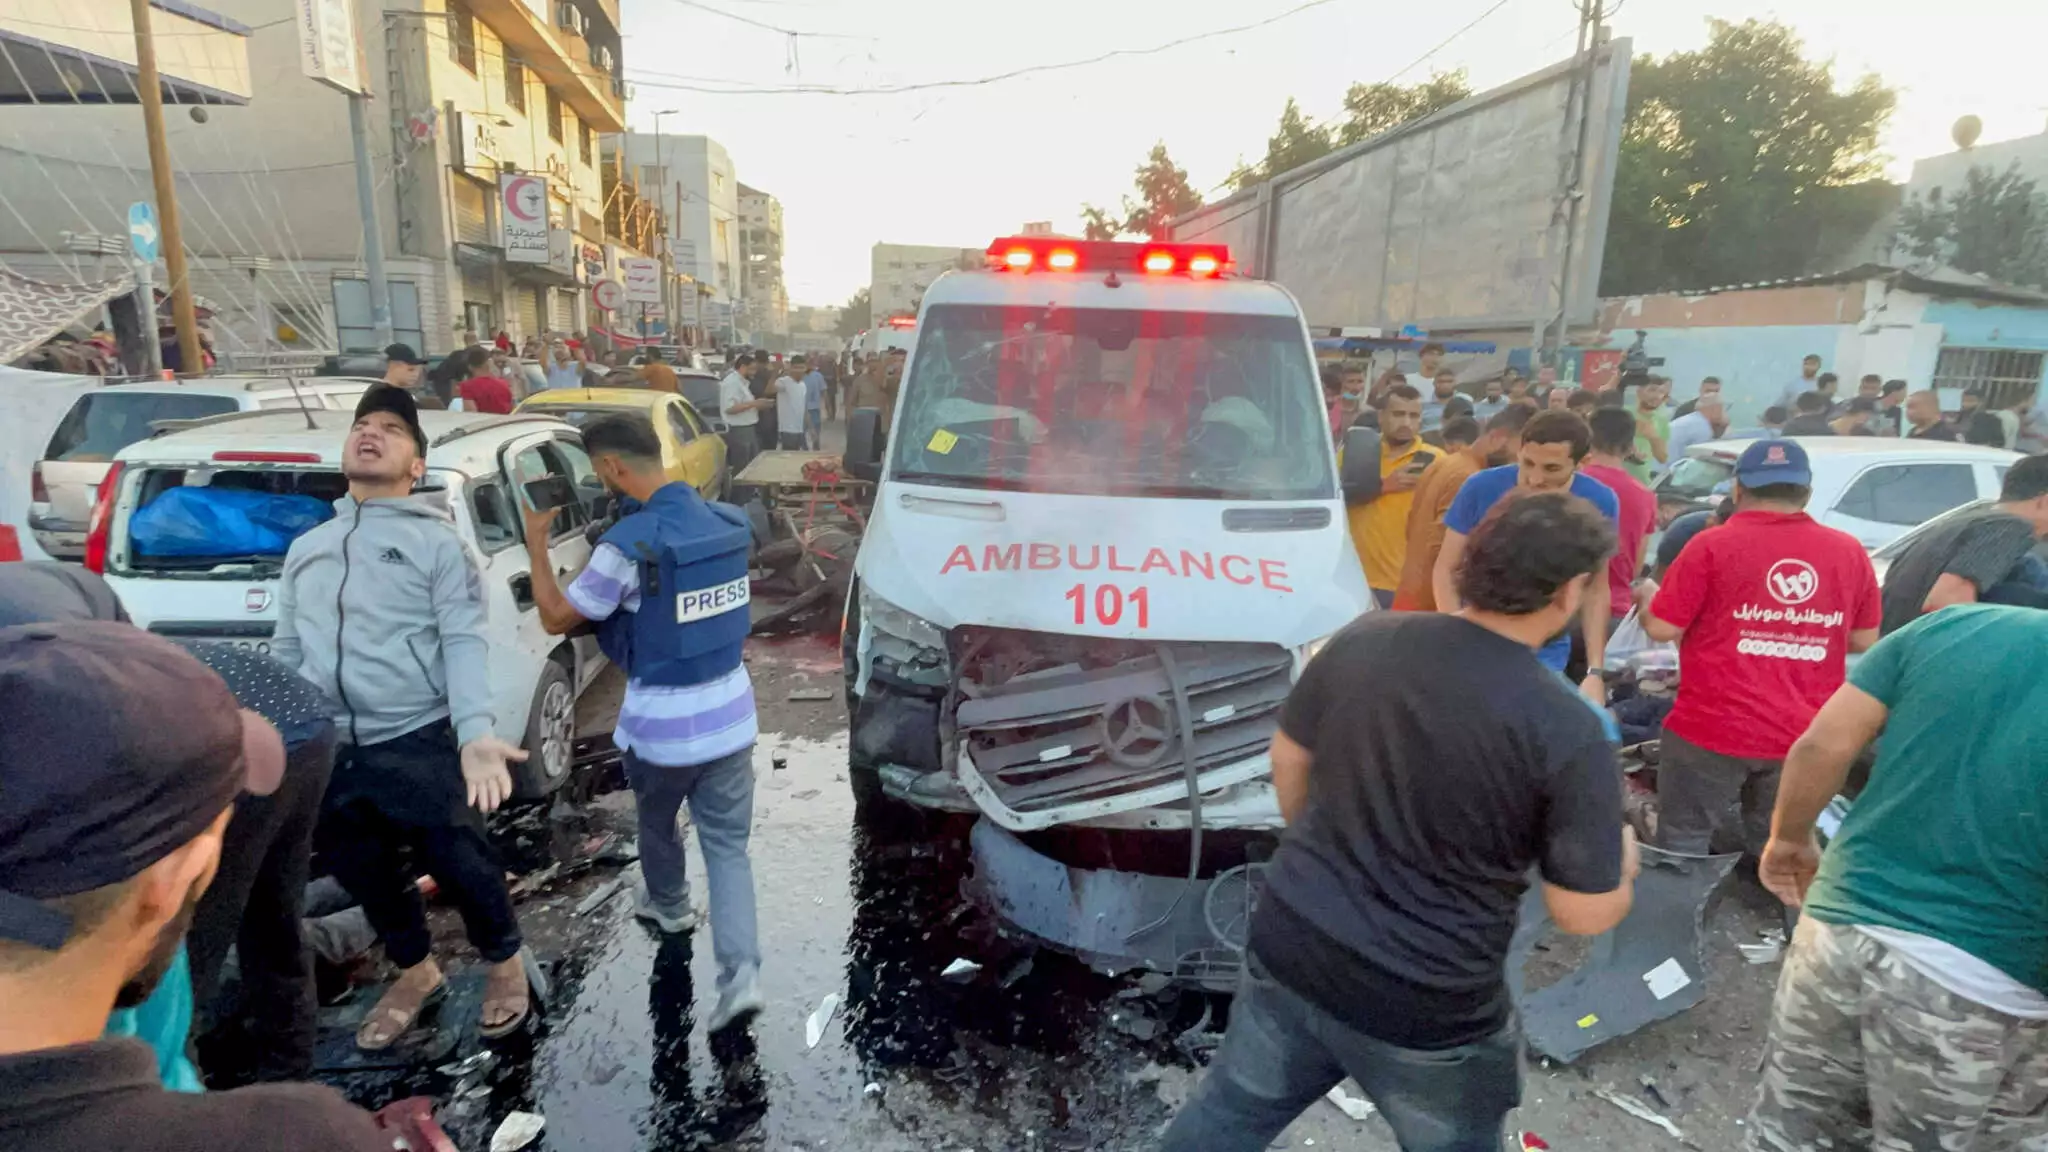 Μέση Ανατολή: Το Ισραήλ επιβεβαιώνει ότι χτύπησε ασθενοφόρο – Υποστηρίζει ότι μετέφερε τρομοκράτες της Χαμάς, 13 νεκροί και 26 οι τραυματίες από την επίθεση